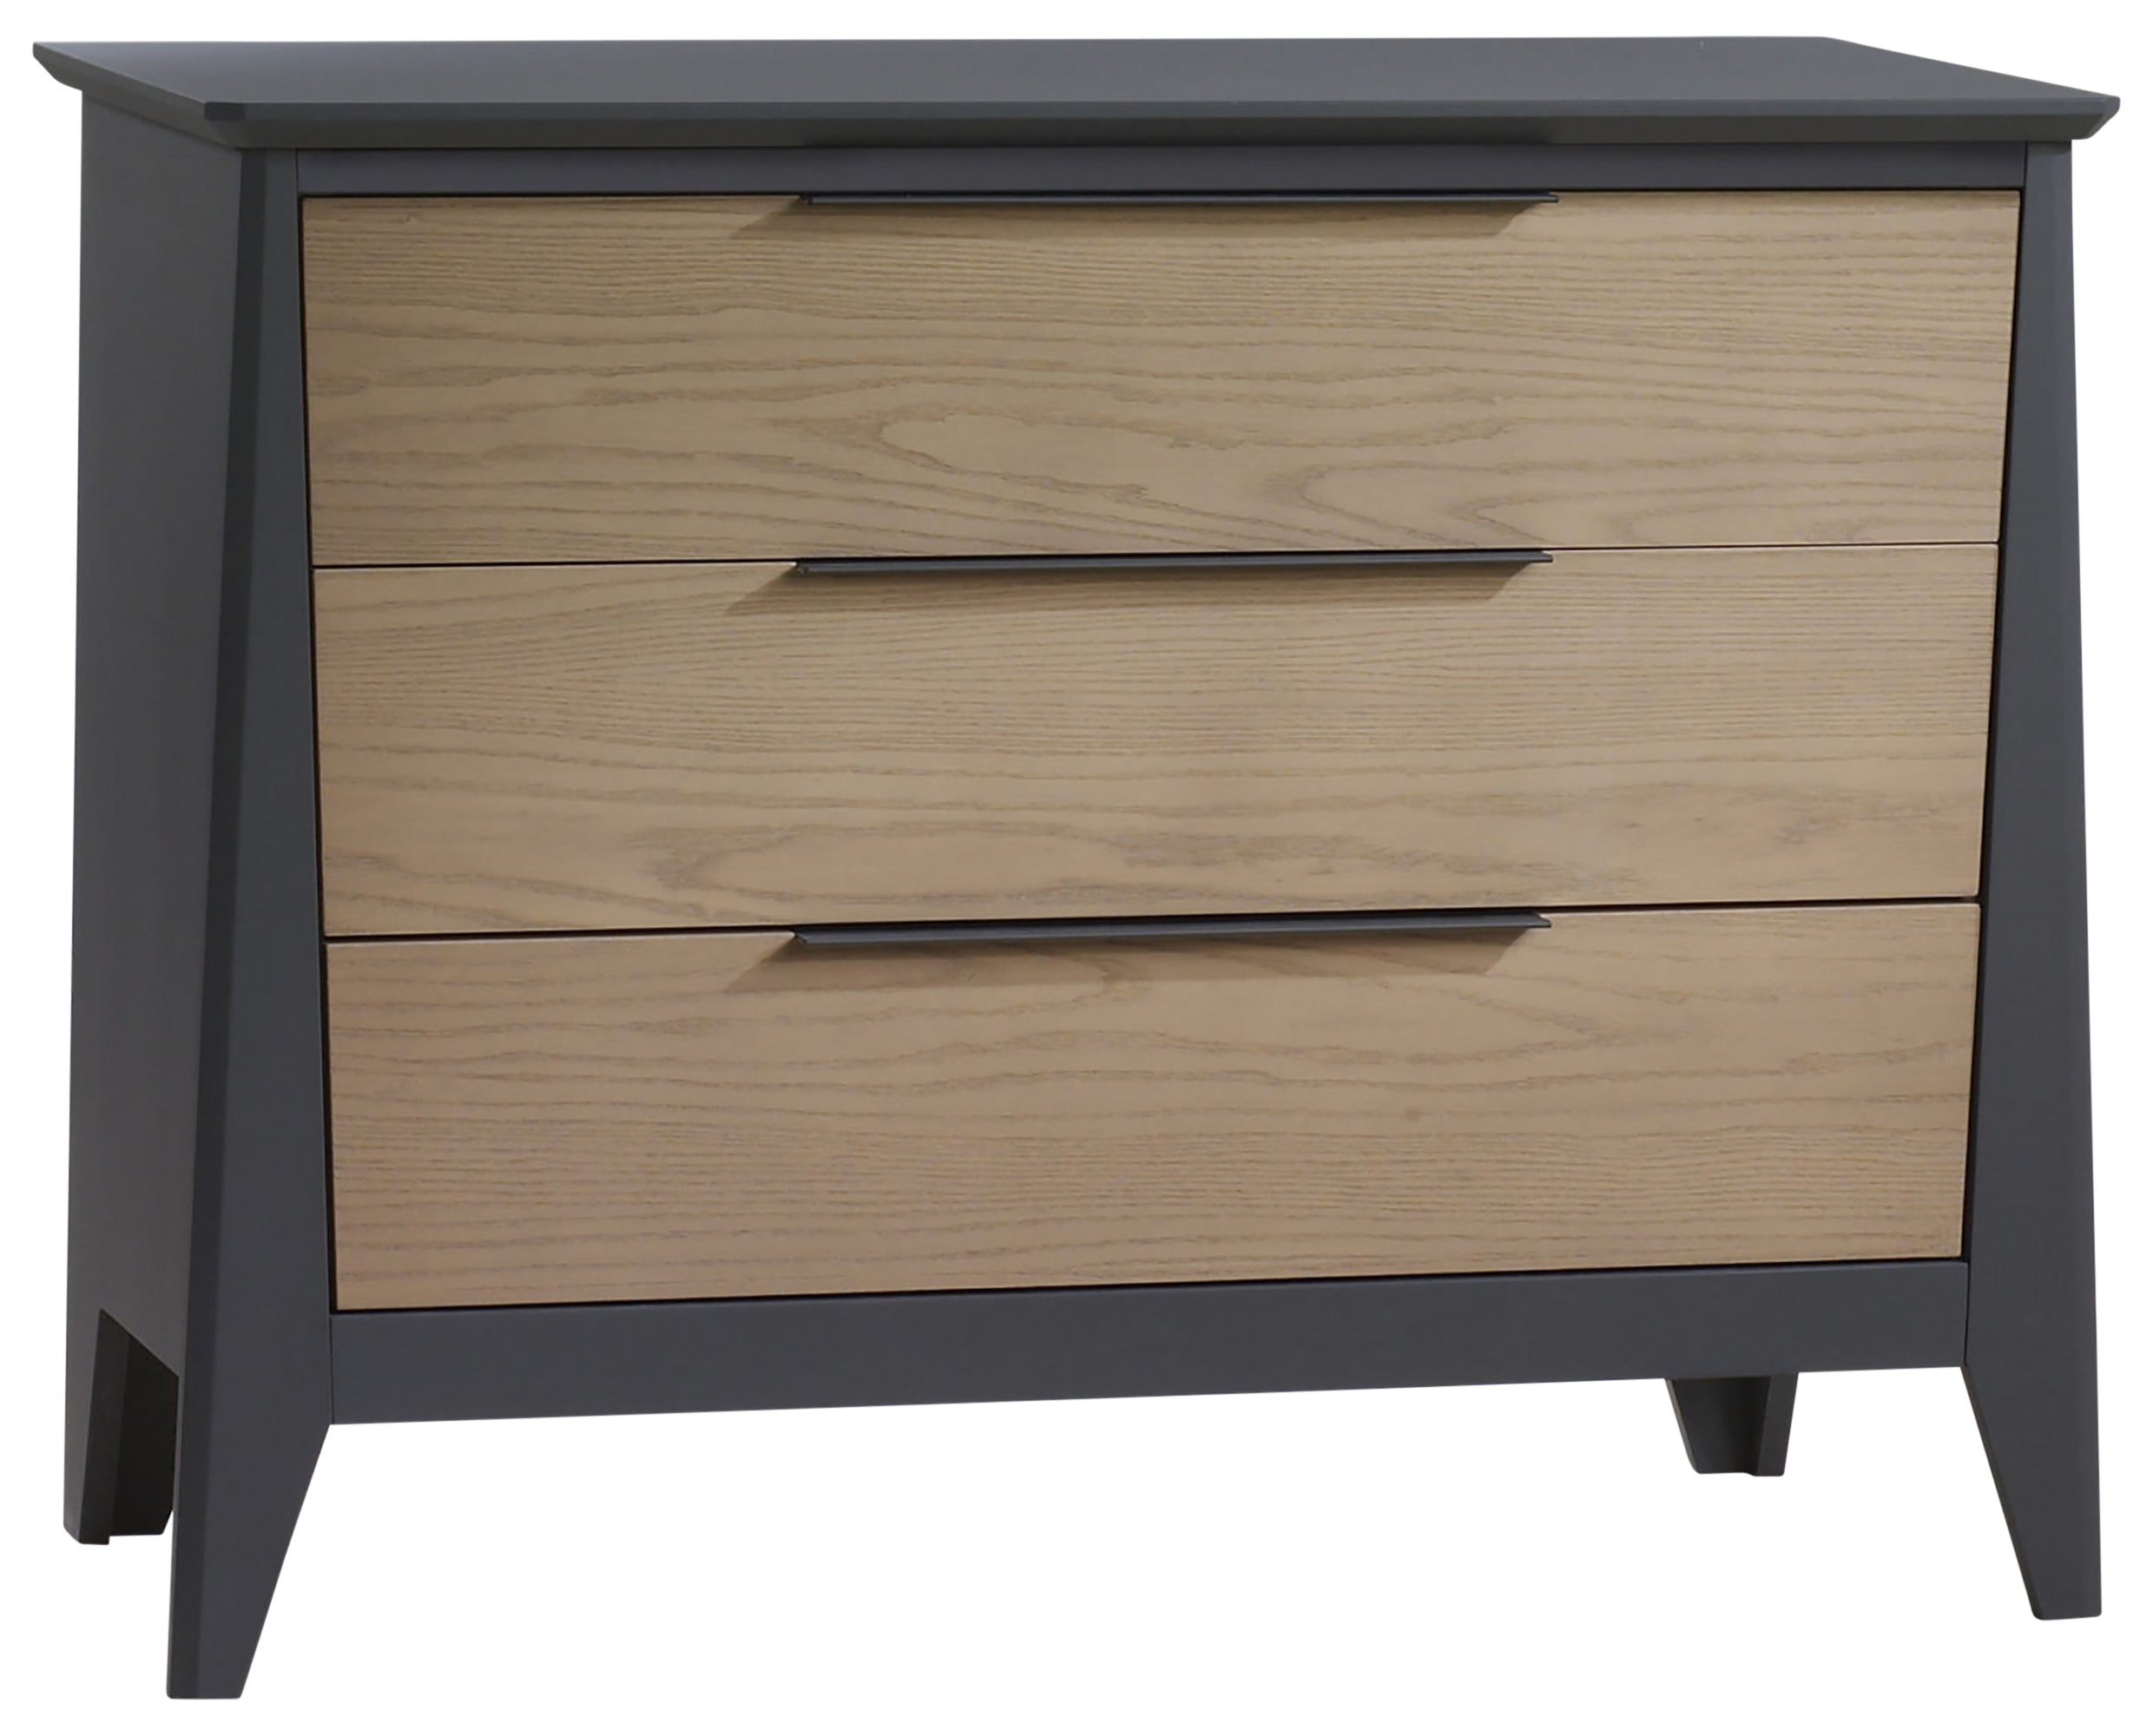 Graphite Birch with Natural Wheat Birch | Flexx Premium 3 Drawer XL Dresser | Valley Ridge Furniture